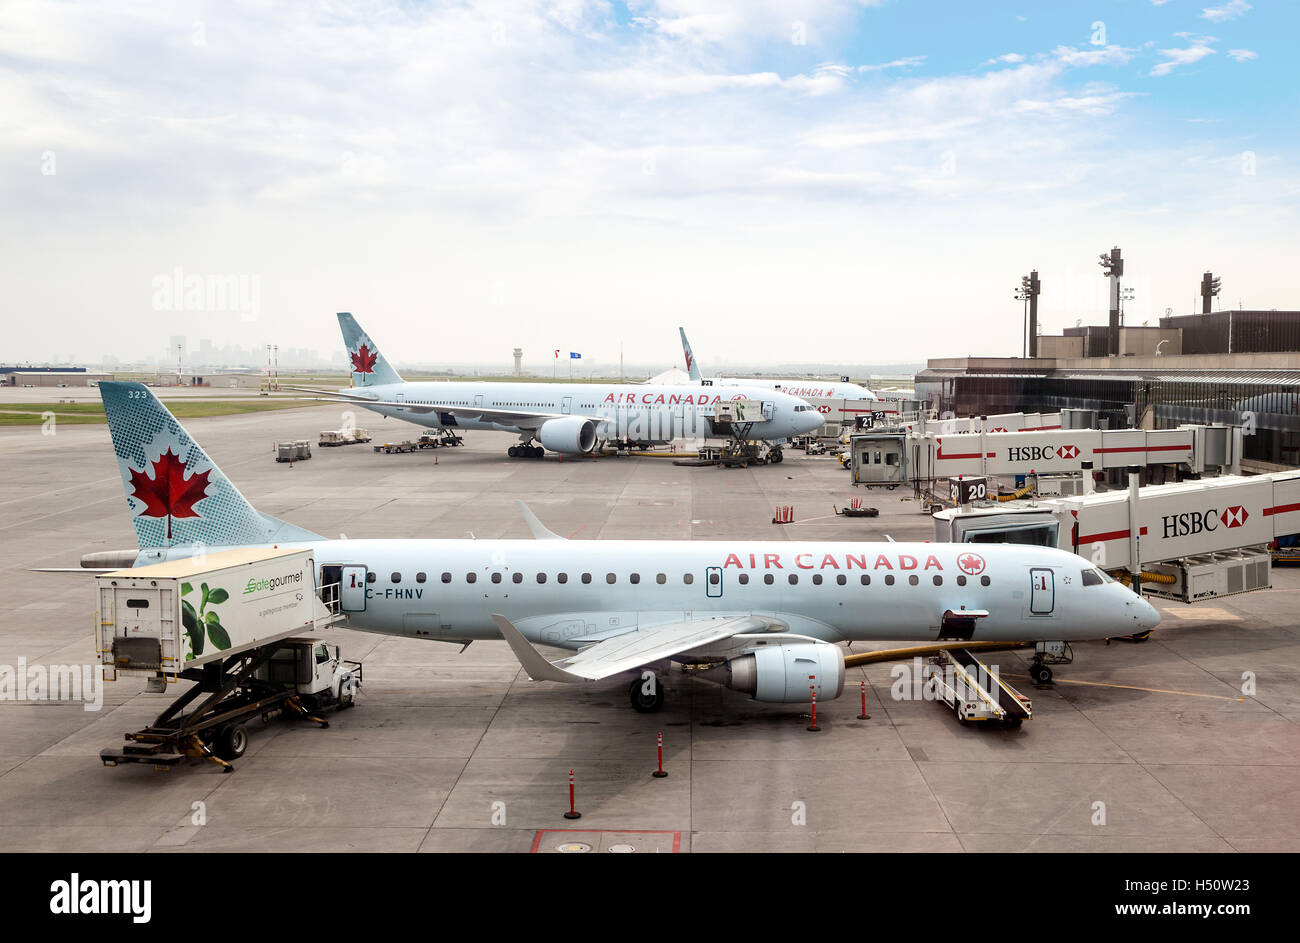 CALGARY, CANADA - 18 juillet : des avions commerciaux d'Air Canada sur le tarmac de l'Aéroport International de Calgary, le 18 juillet 2014. Banque D'Images